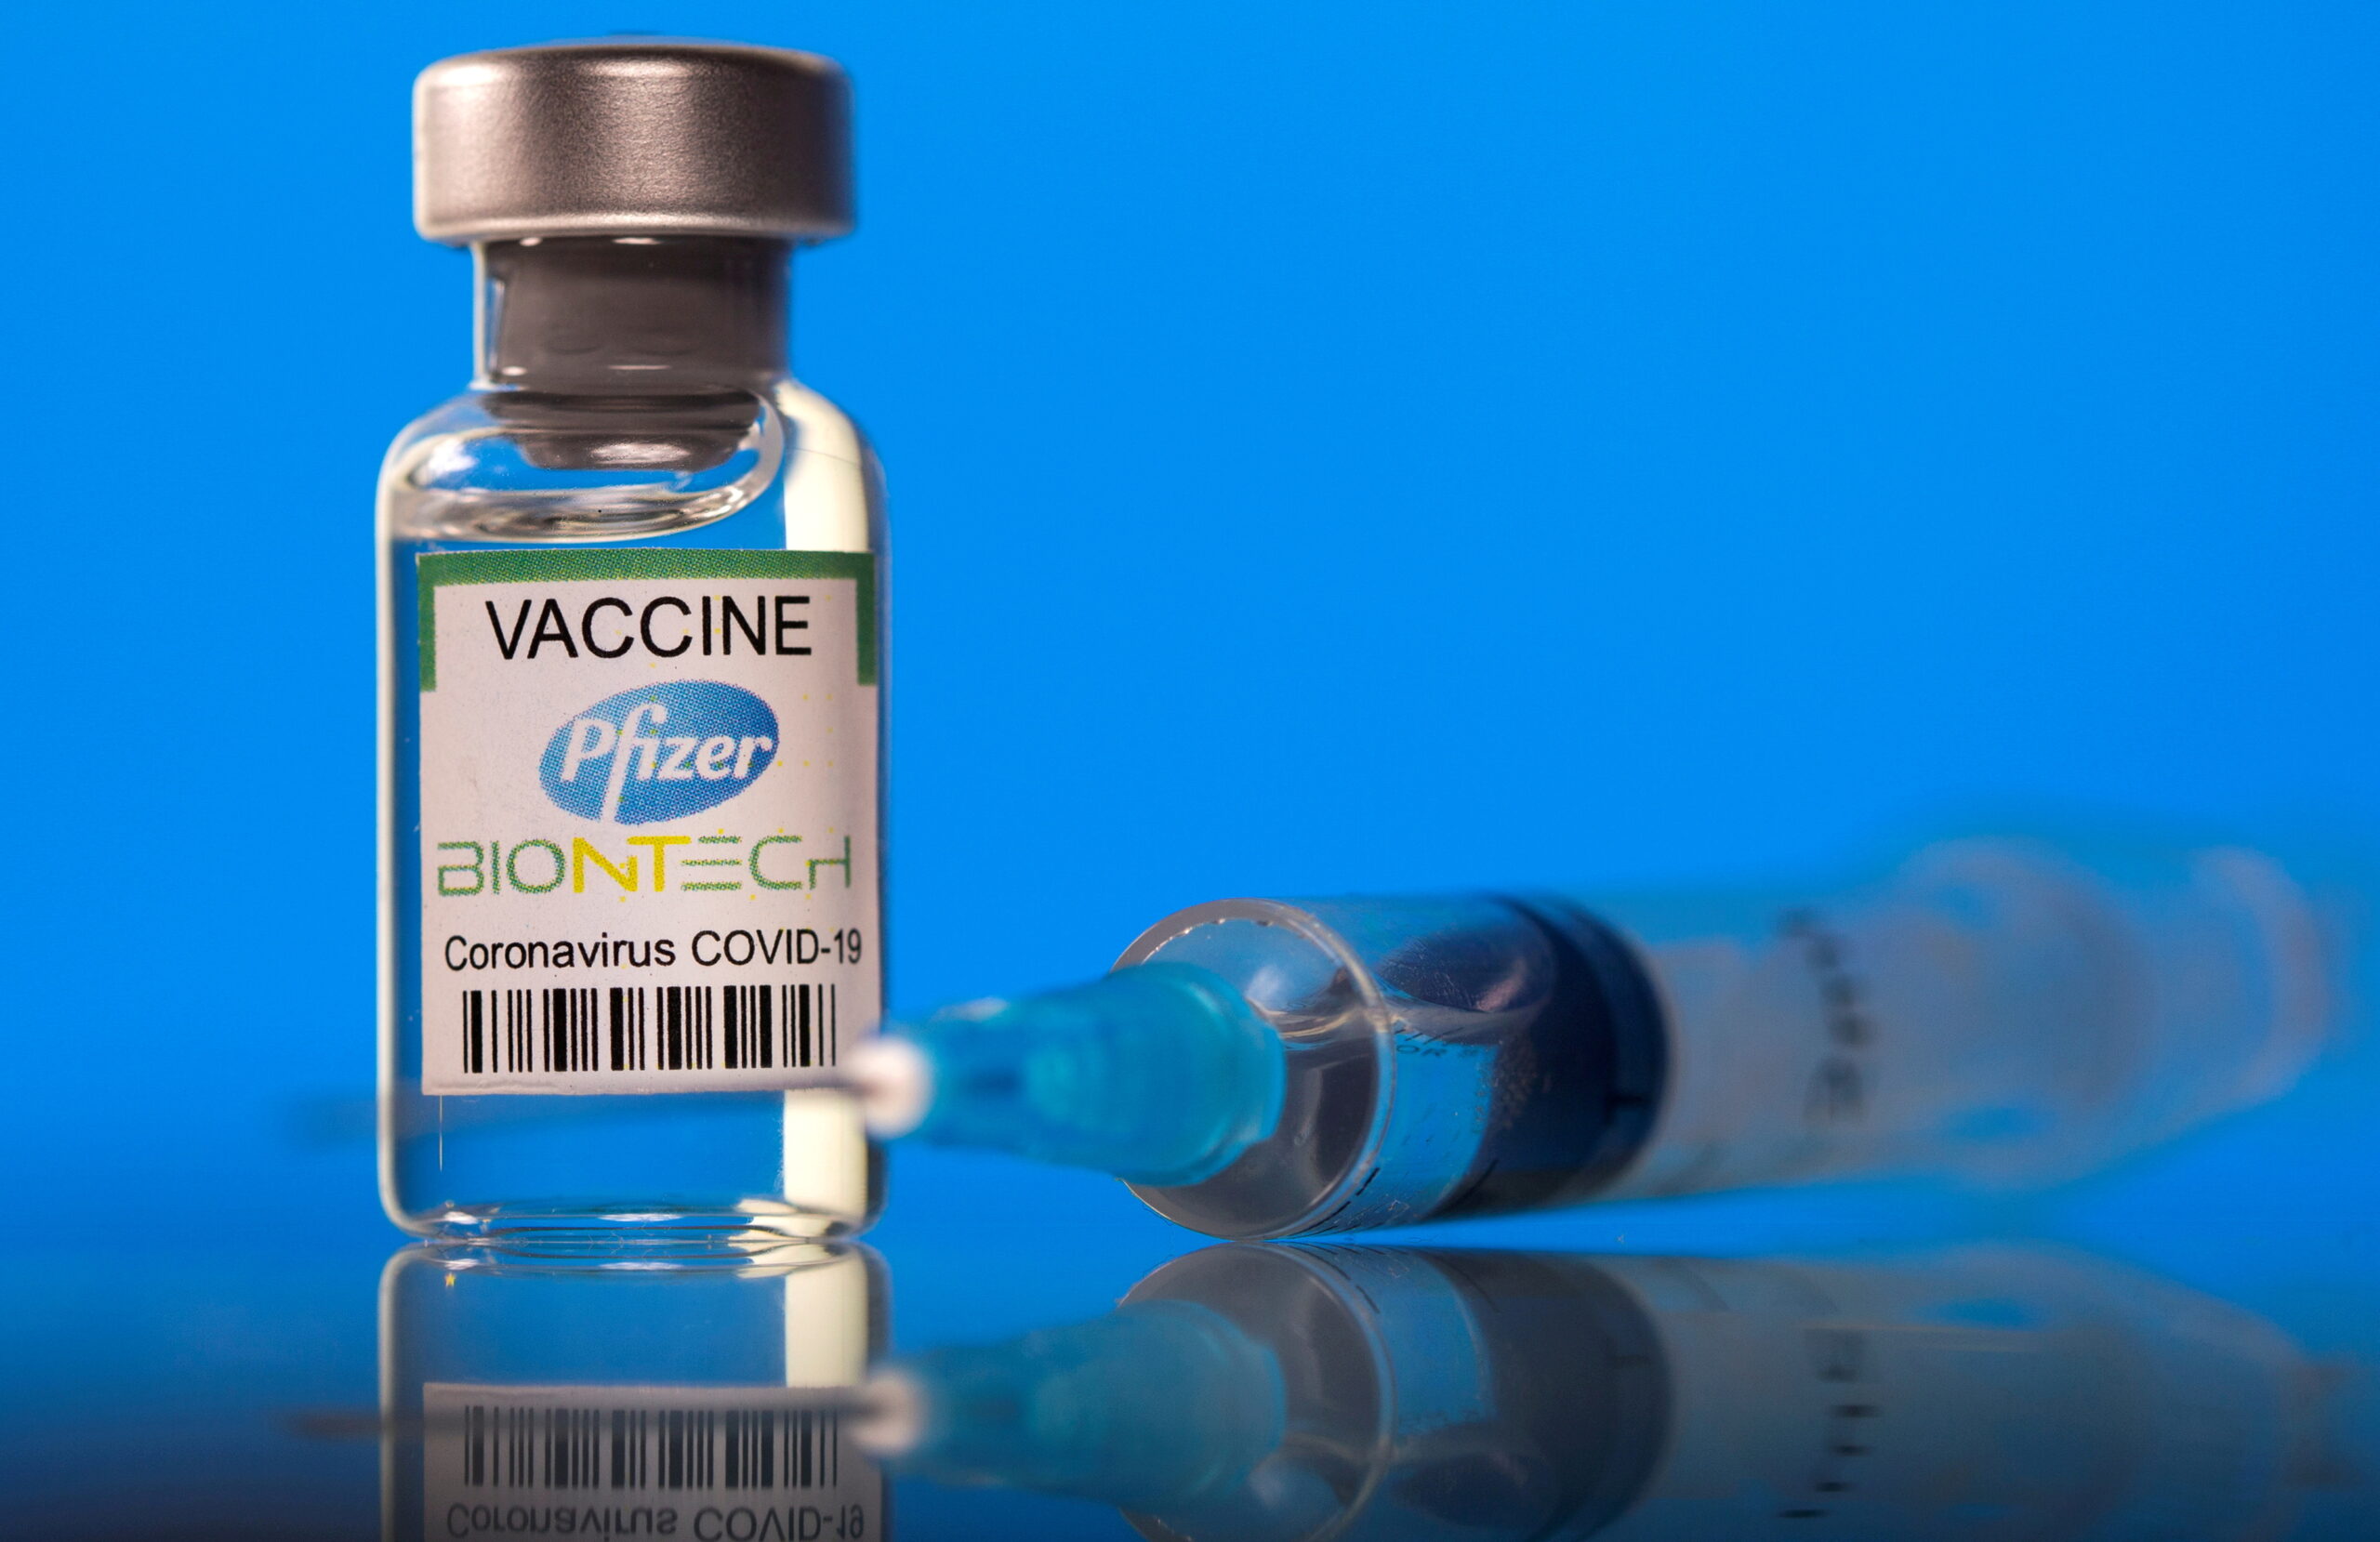 รพ.ภูมิพลฯ เปิดจองฉีดวัคซีนไฟเซอร์ 15-17 ก.ย. ใครมีสิทธิบ้าง เช็กเลย! – ธุรกิจ